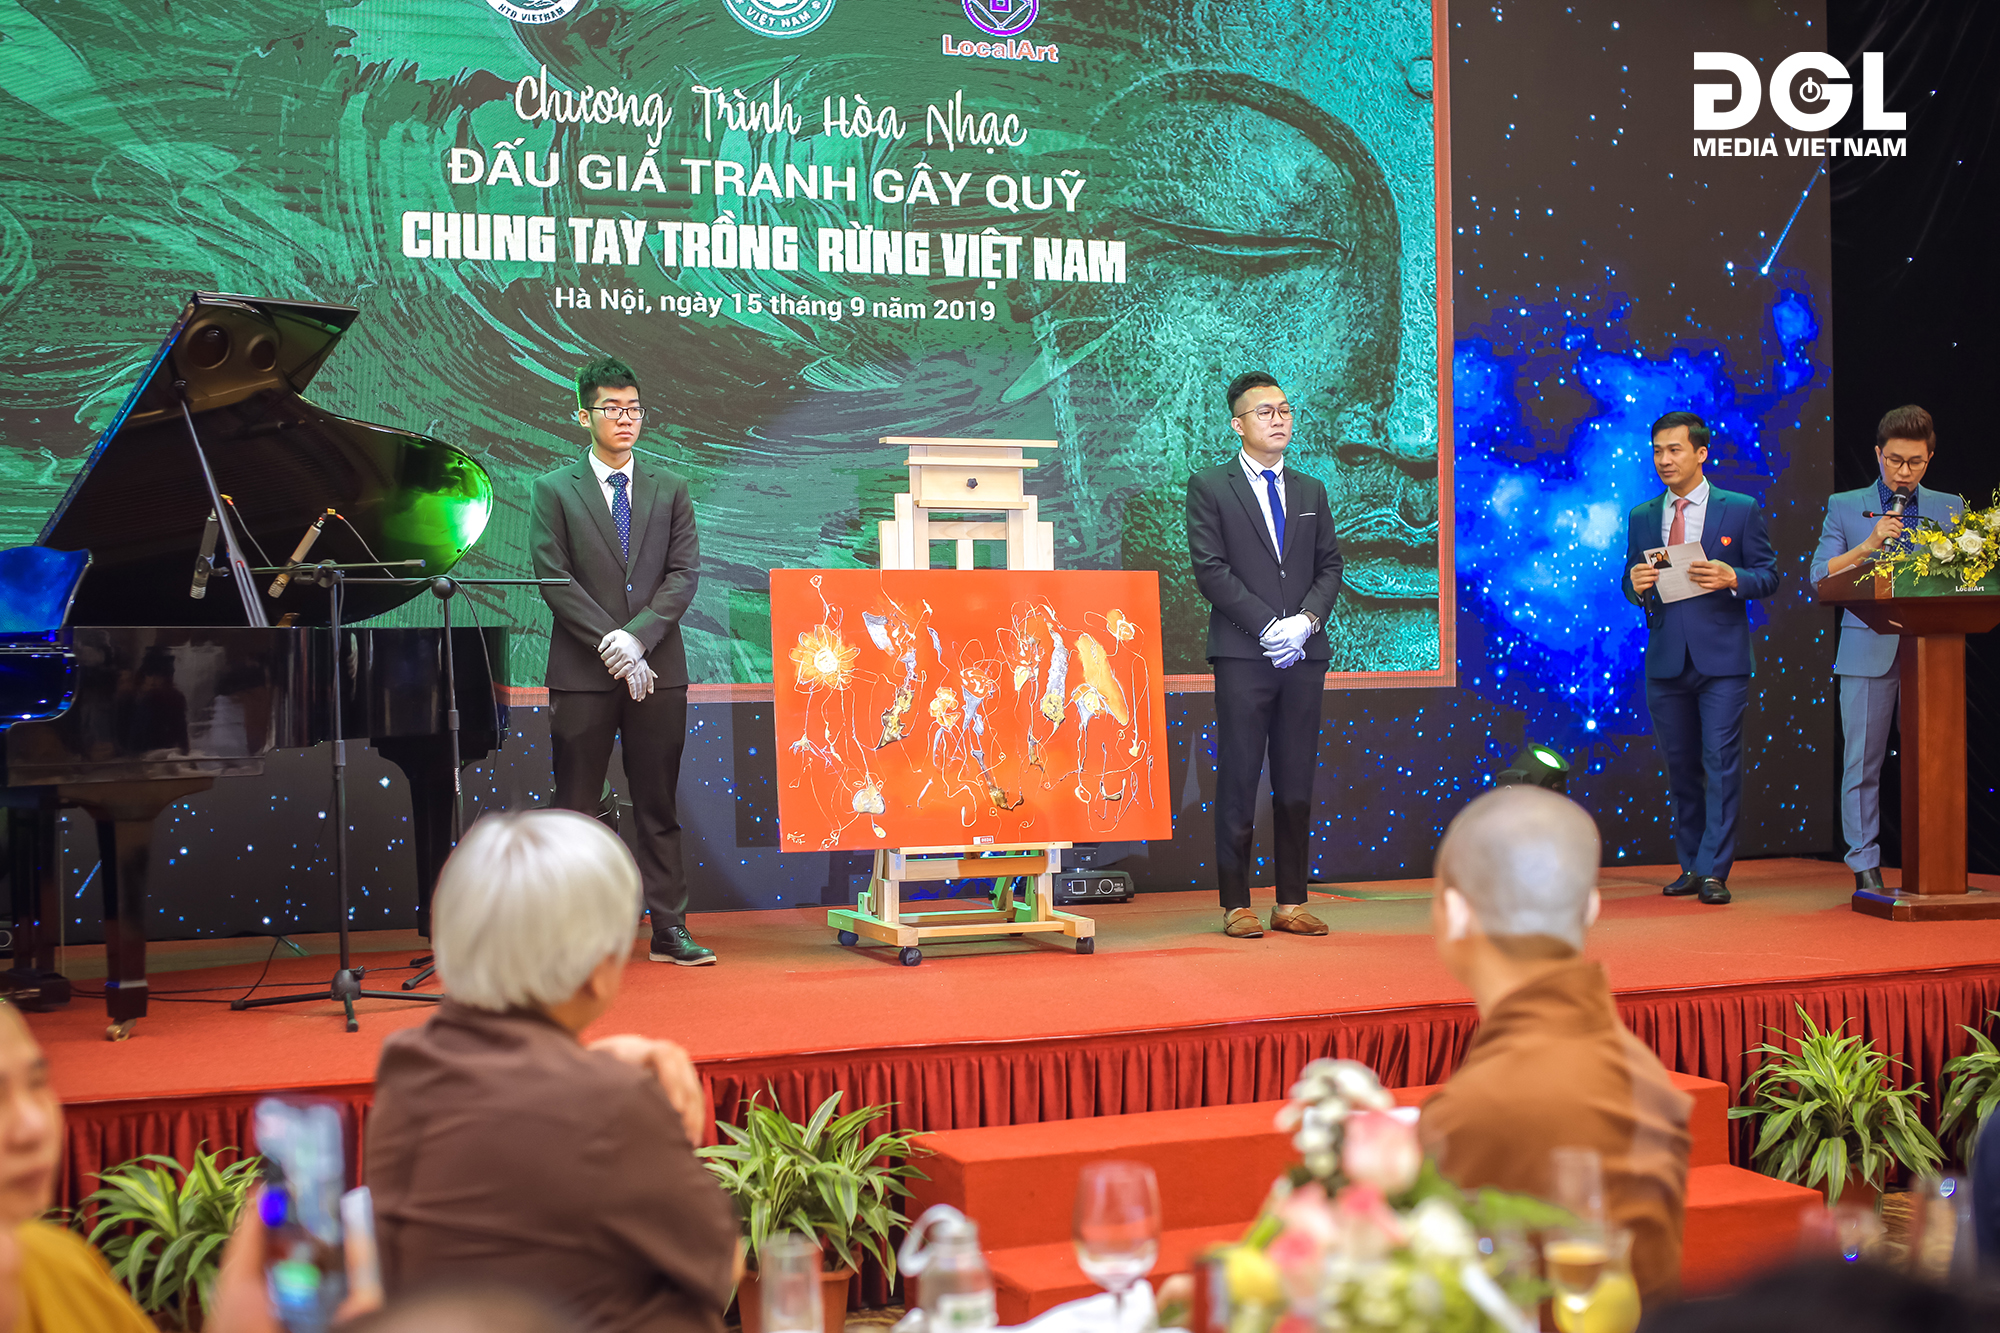 Chương trình hòa nhạc, đấu giá tranh gây quỹ 'Chung tay trồng rừng Việt Nam'